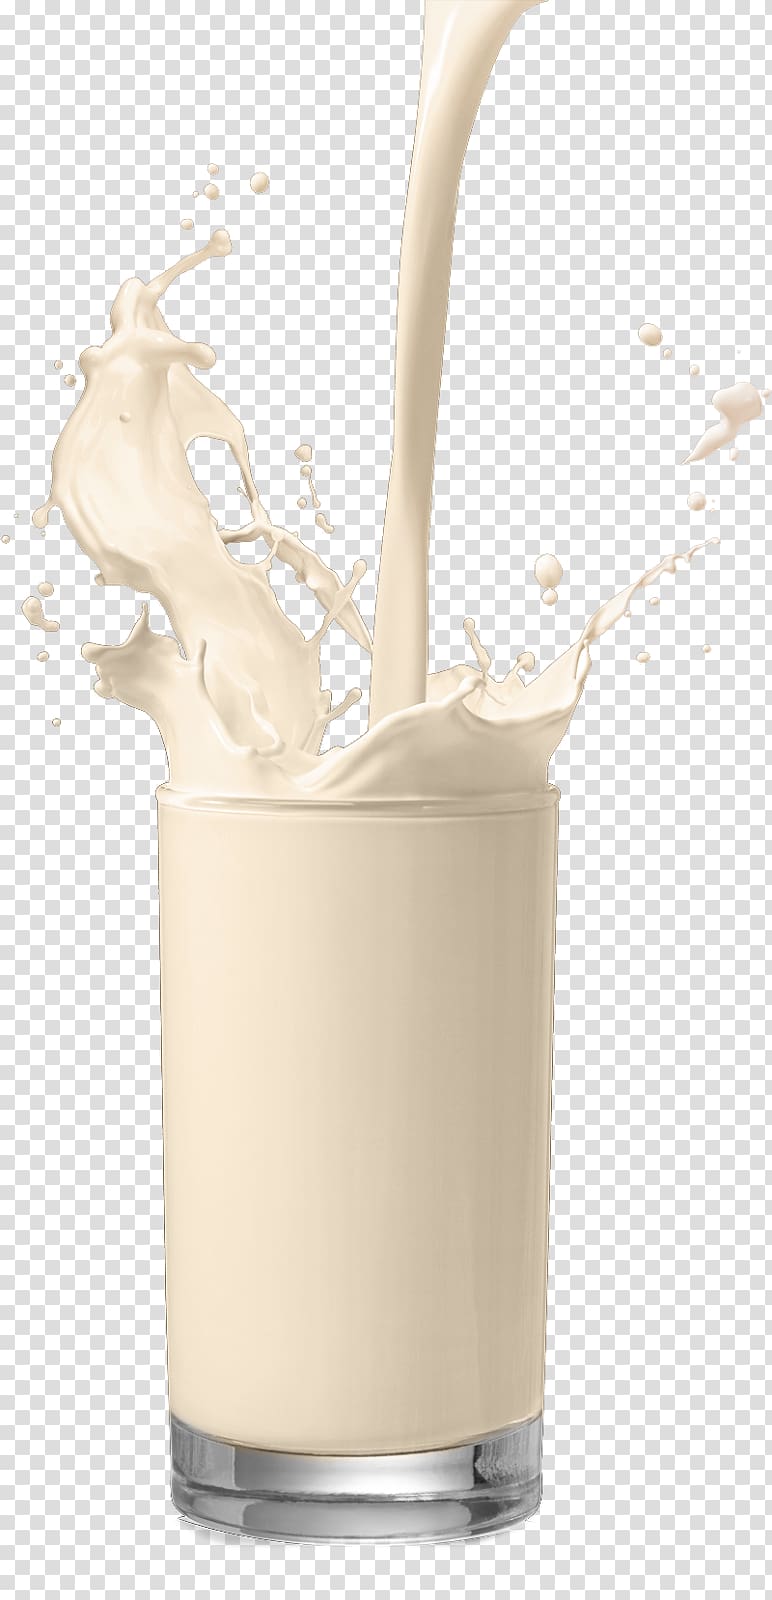 Skimmed milk Flavor Health Food, milk shake transparent background PNG clipart